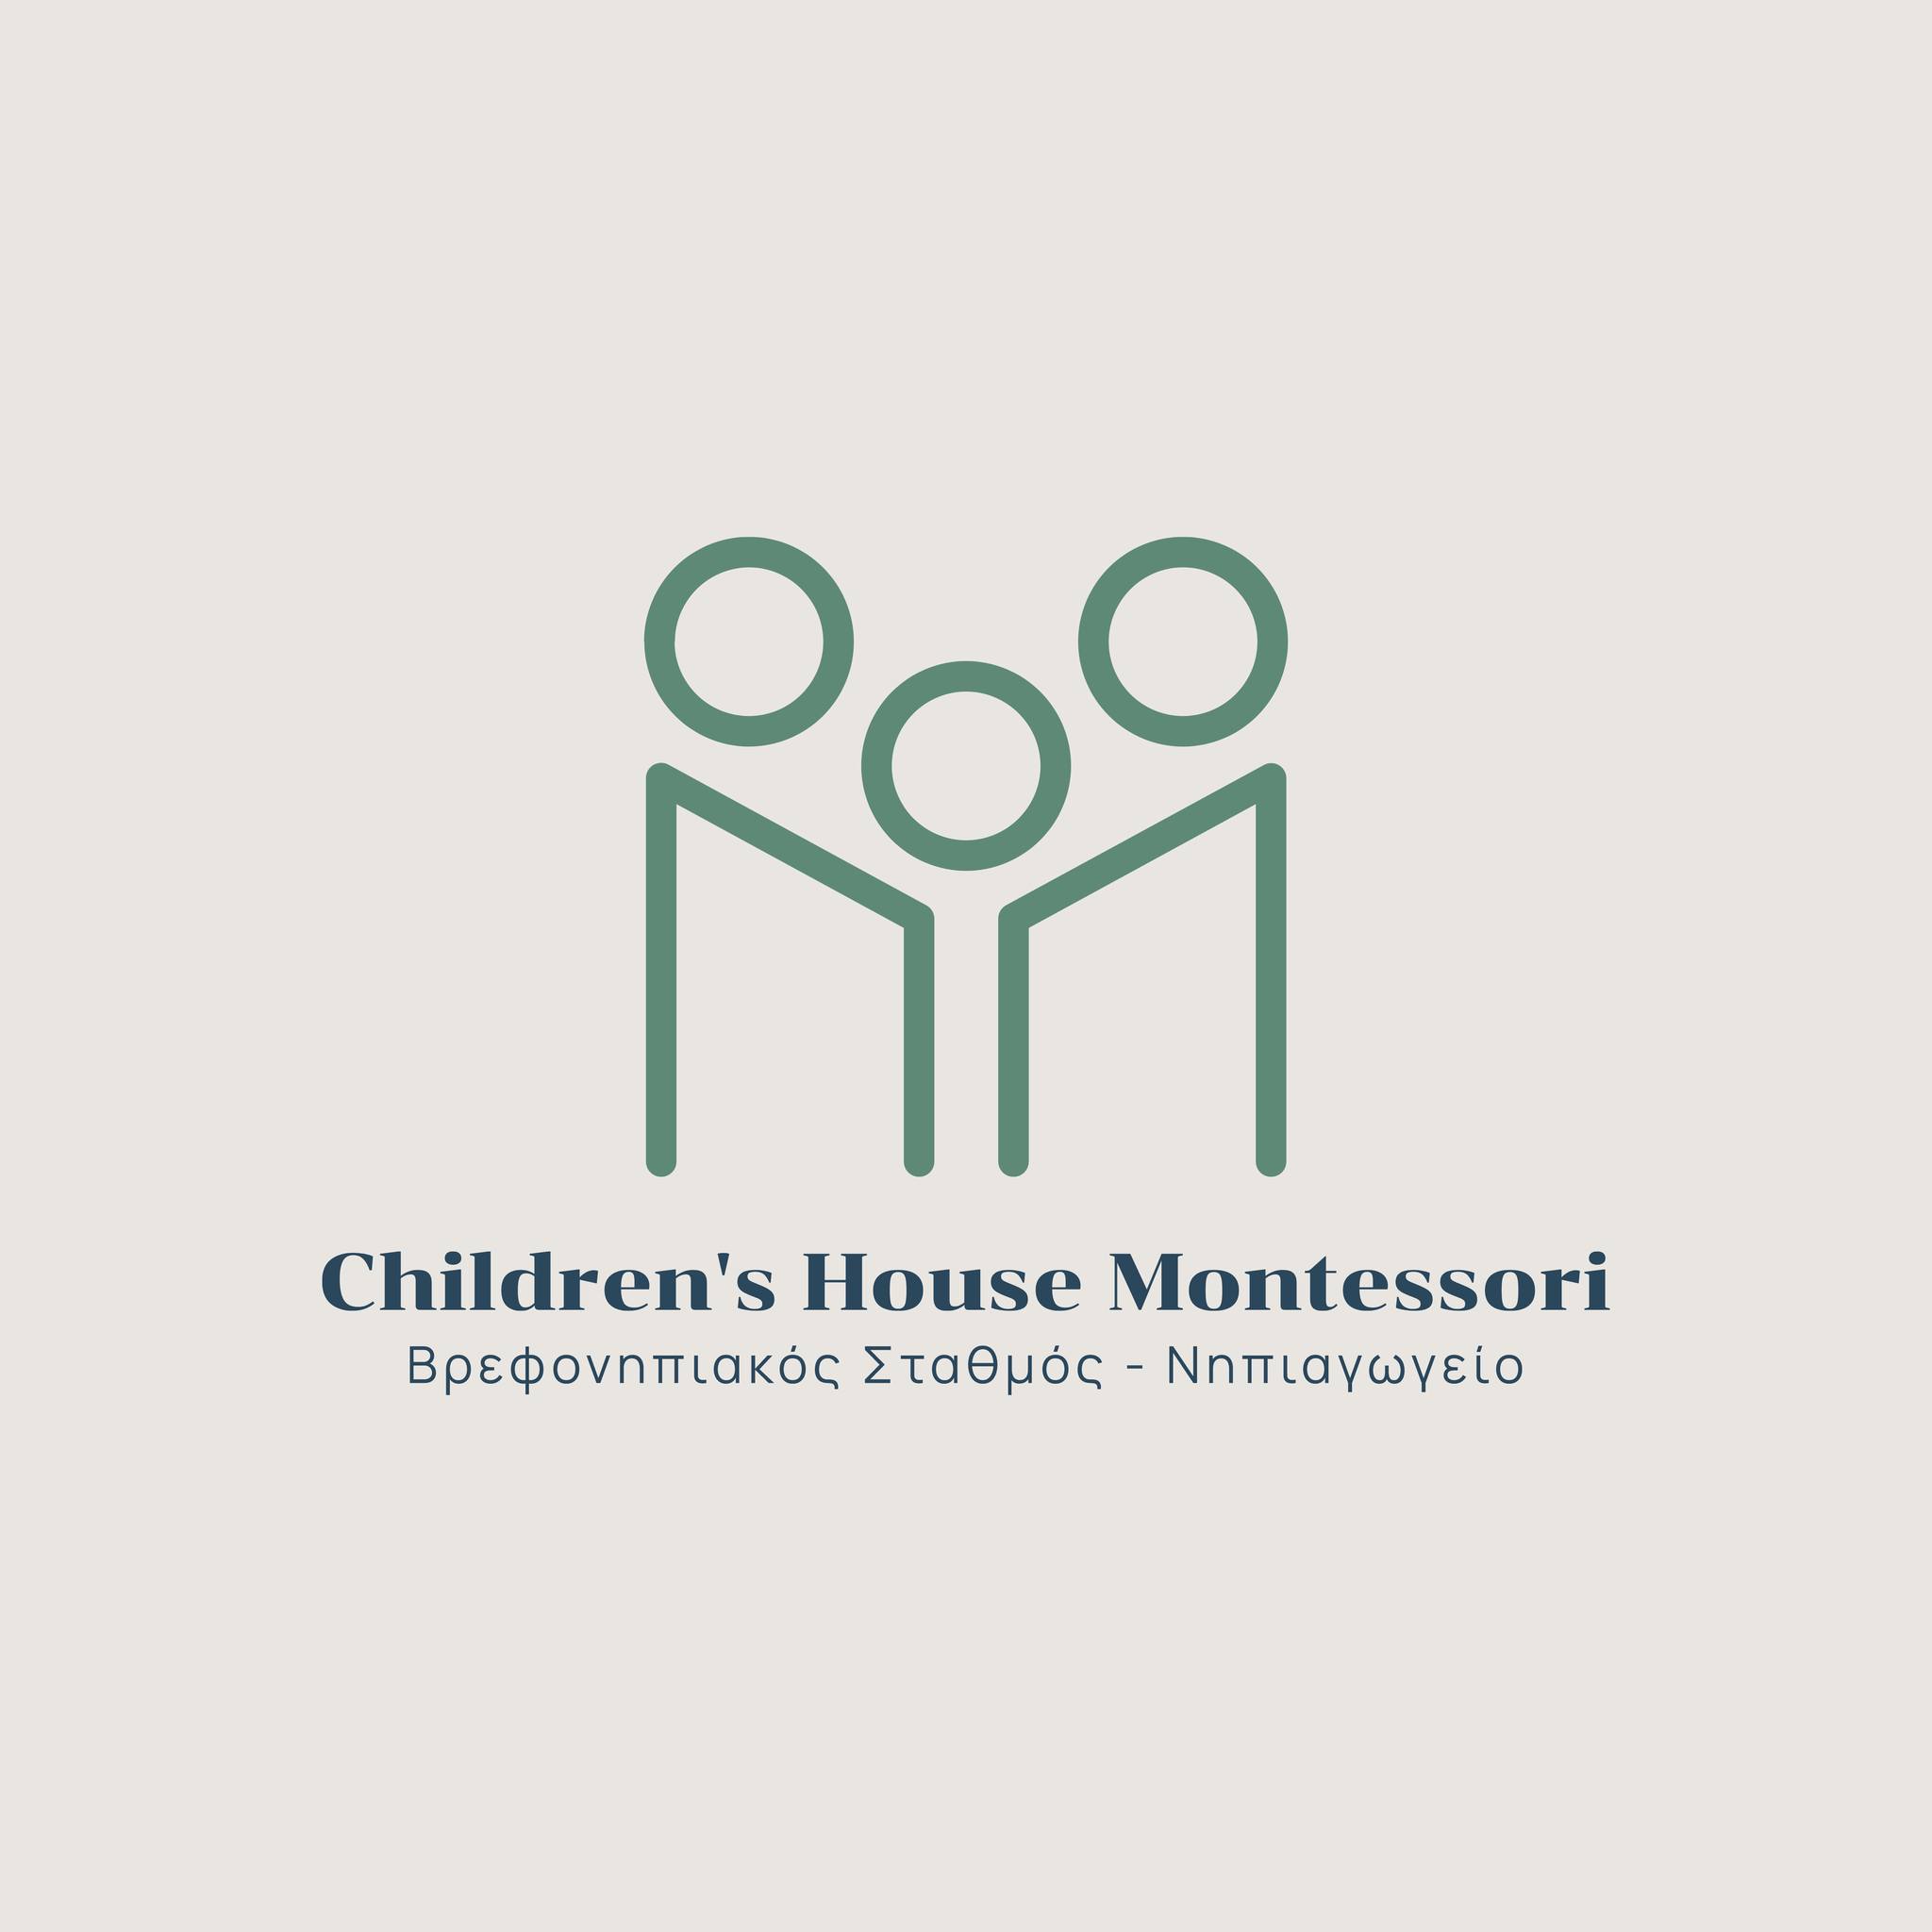 Μοντεσσοριανός Δίγλωσσος Βρεφονηπιακός Παιδικό Σταθμός και Νηπιαγωγείο CHILDREN'S HOUSE